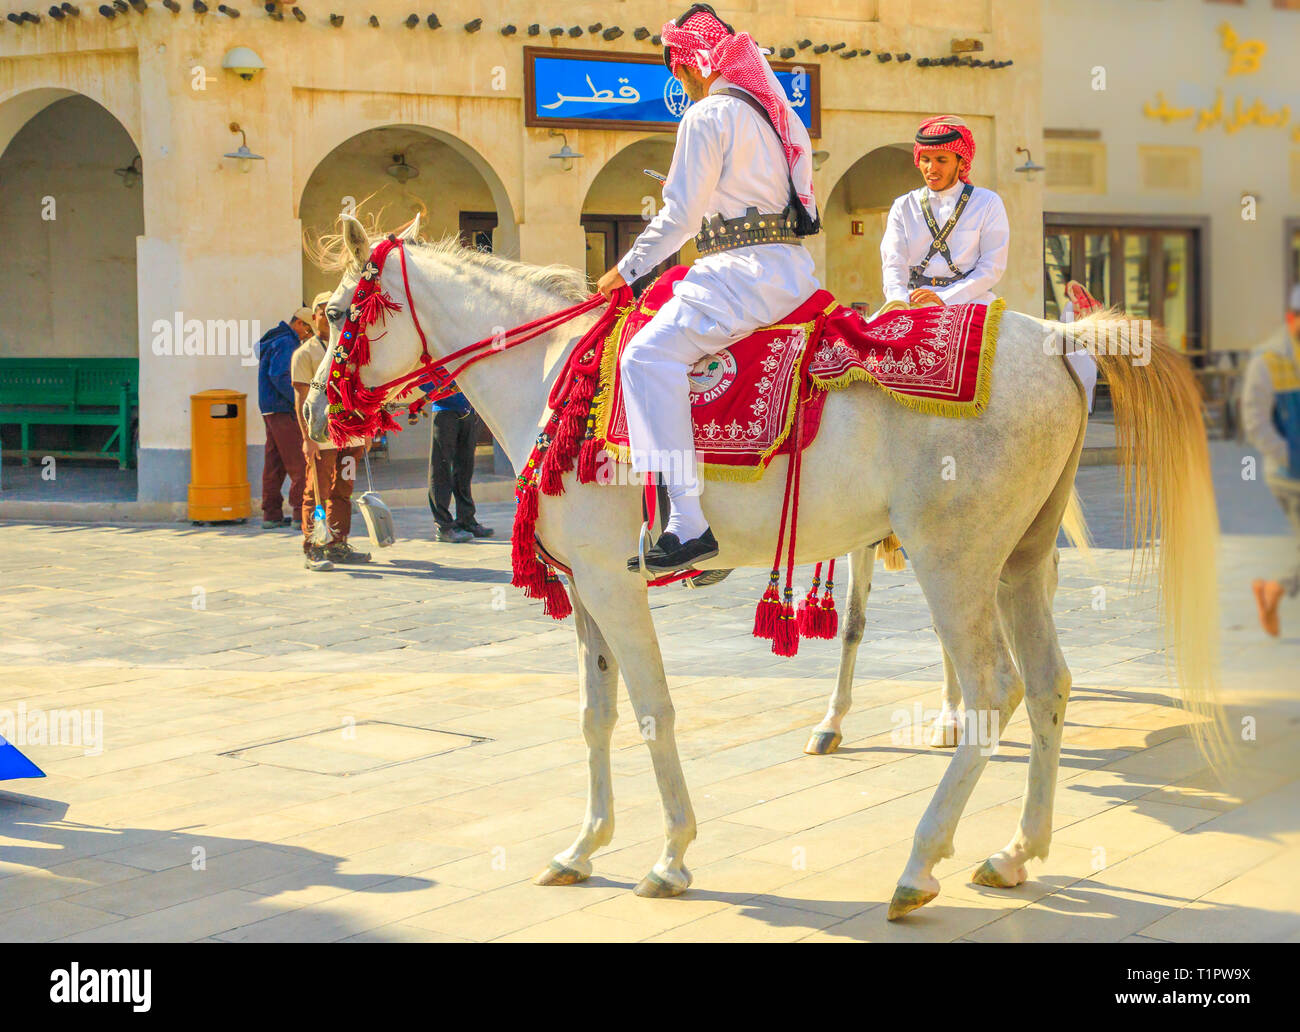 Doha, Katar - Februar 20, 2019: Nahaufnahme von Polizei am Pferd in traditioneller Kleidung bei Souq Waqif reiten Weiße arabische Pferde. Beliebte touristische Stockfoto